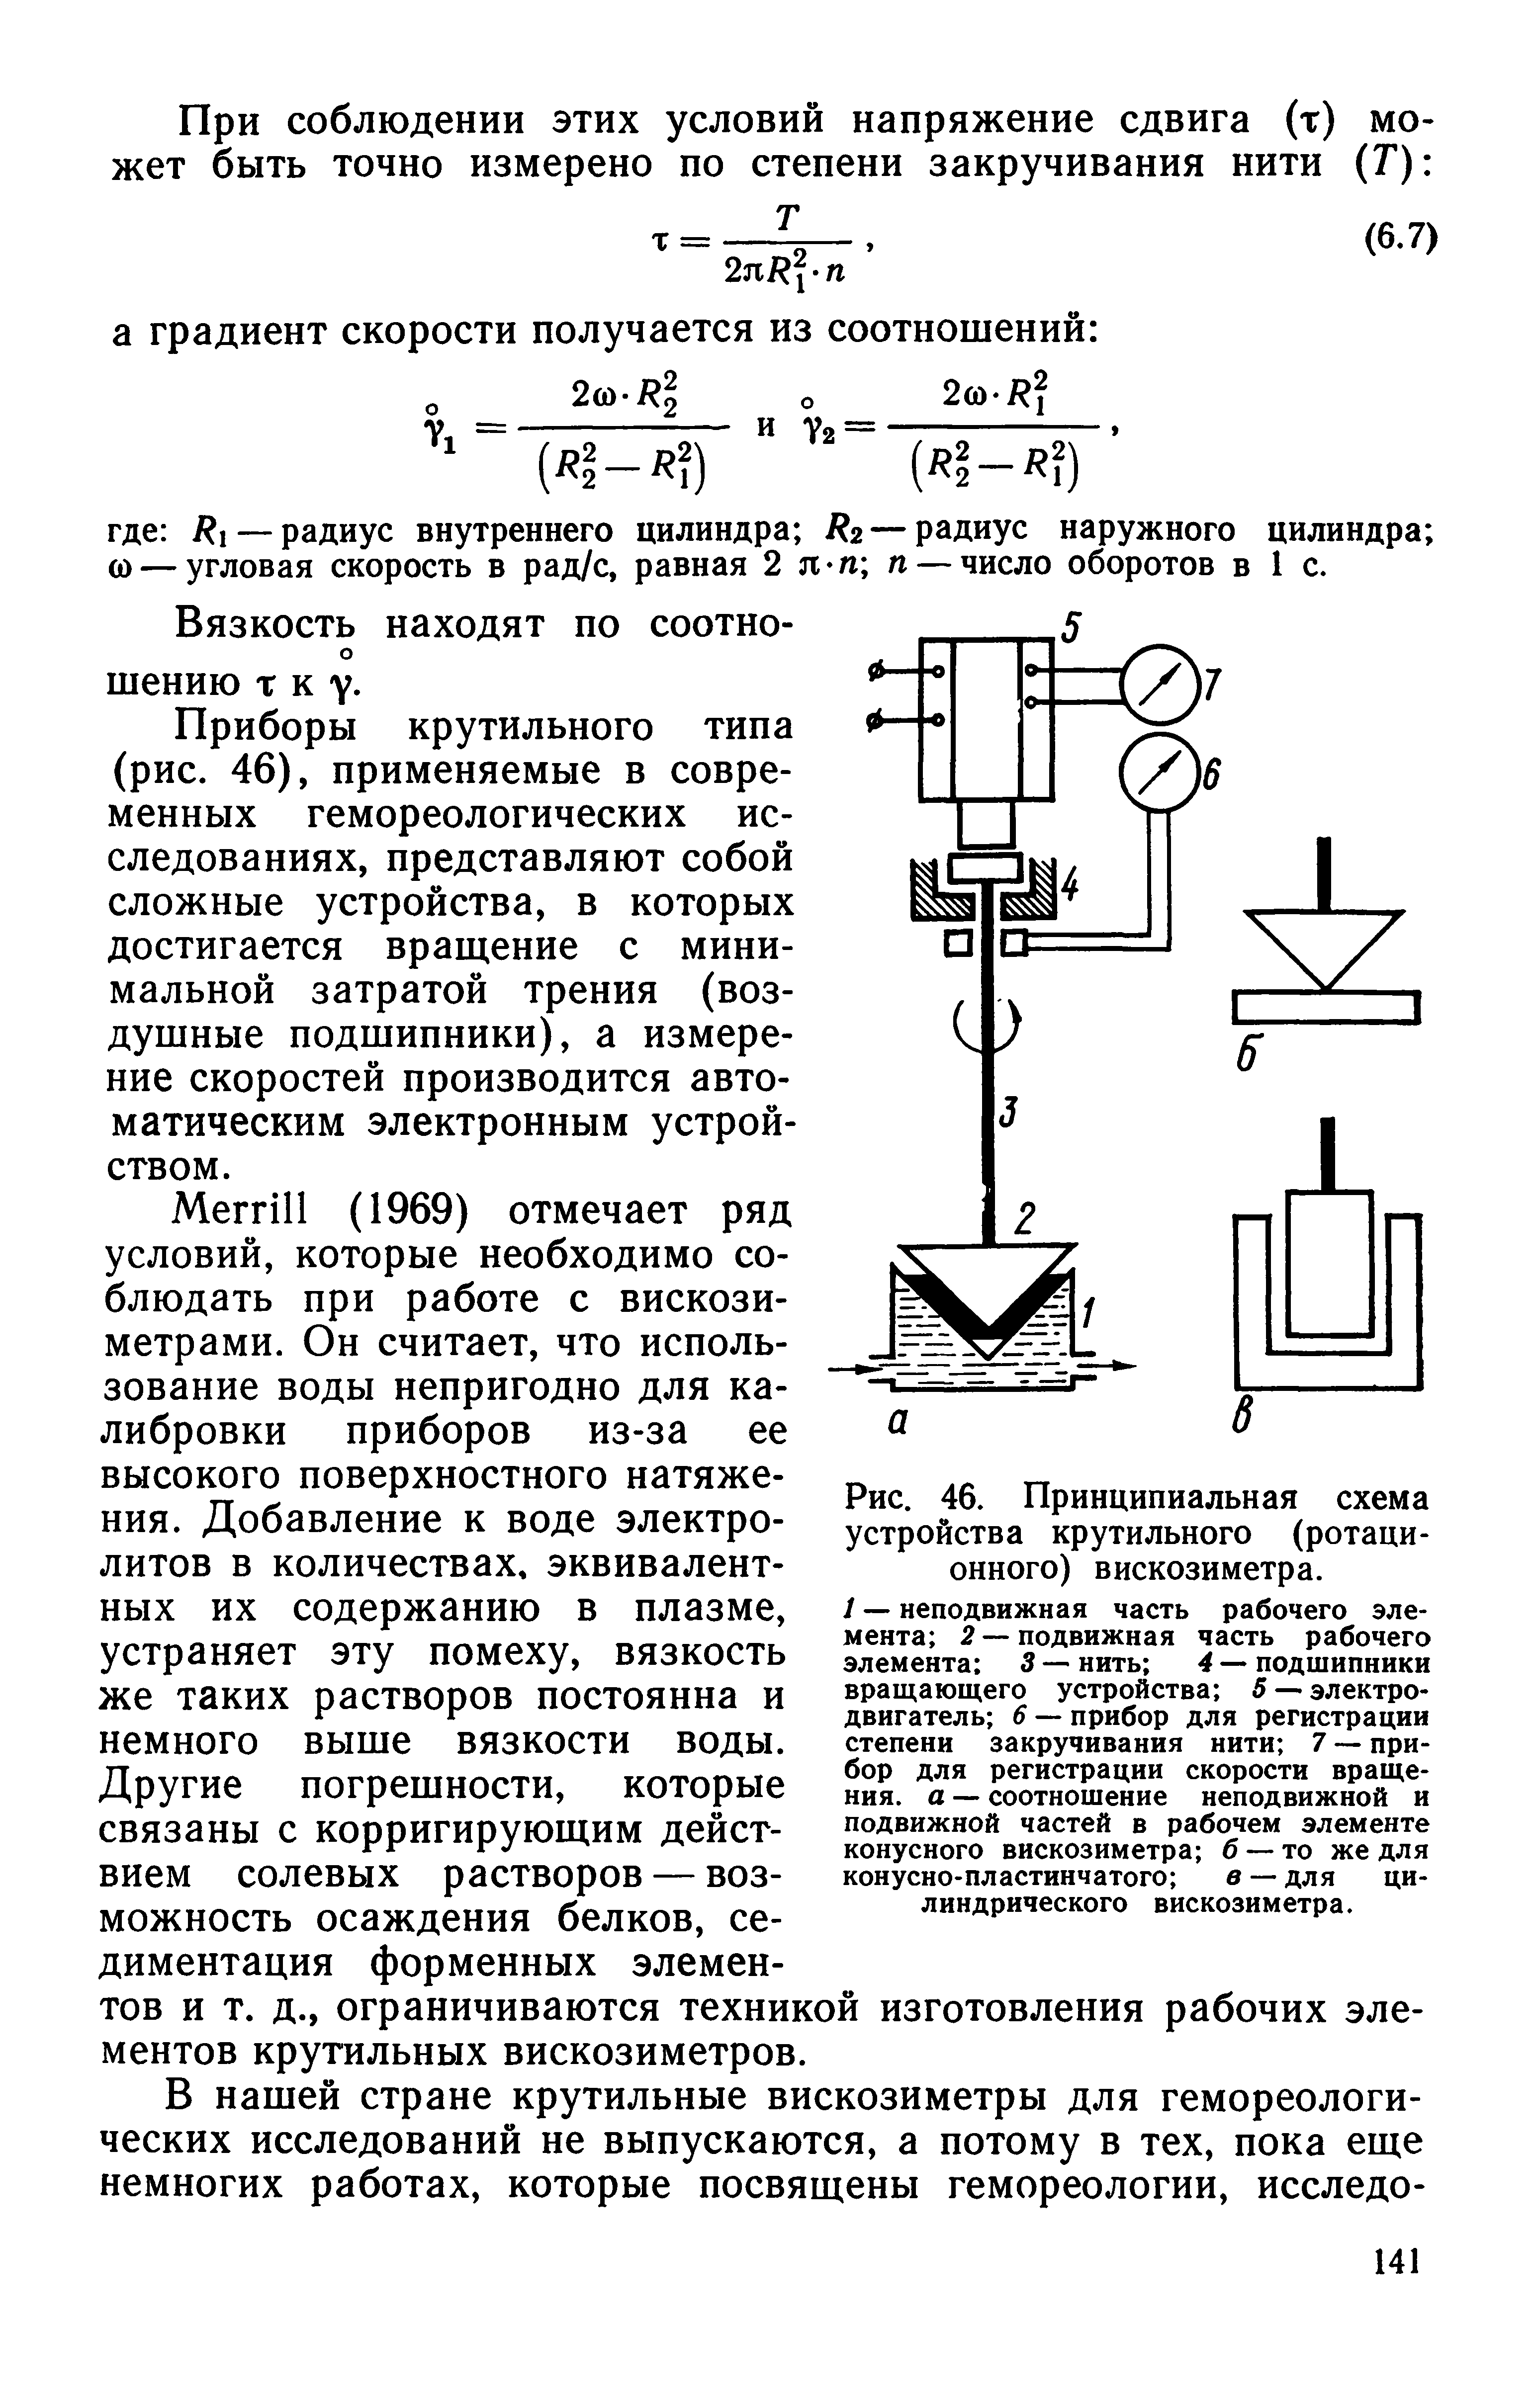 Рис. 46. Принципиальная схема устройства крутильного (ротационного) вискозиметра.